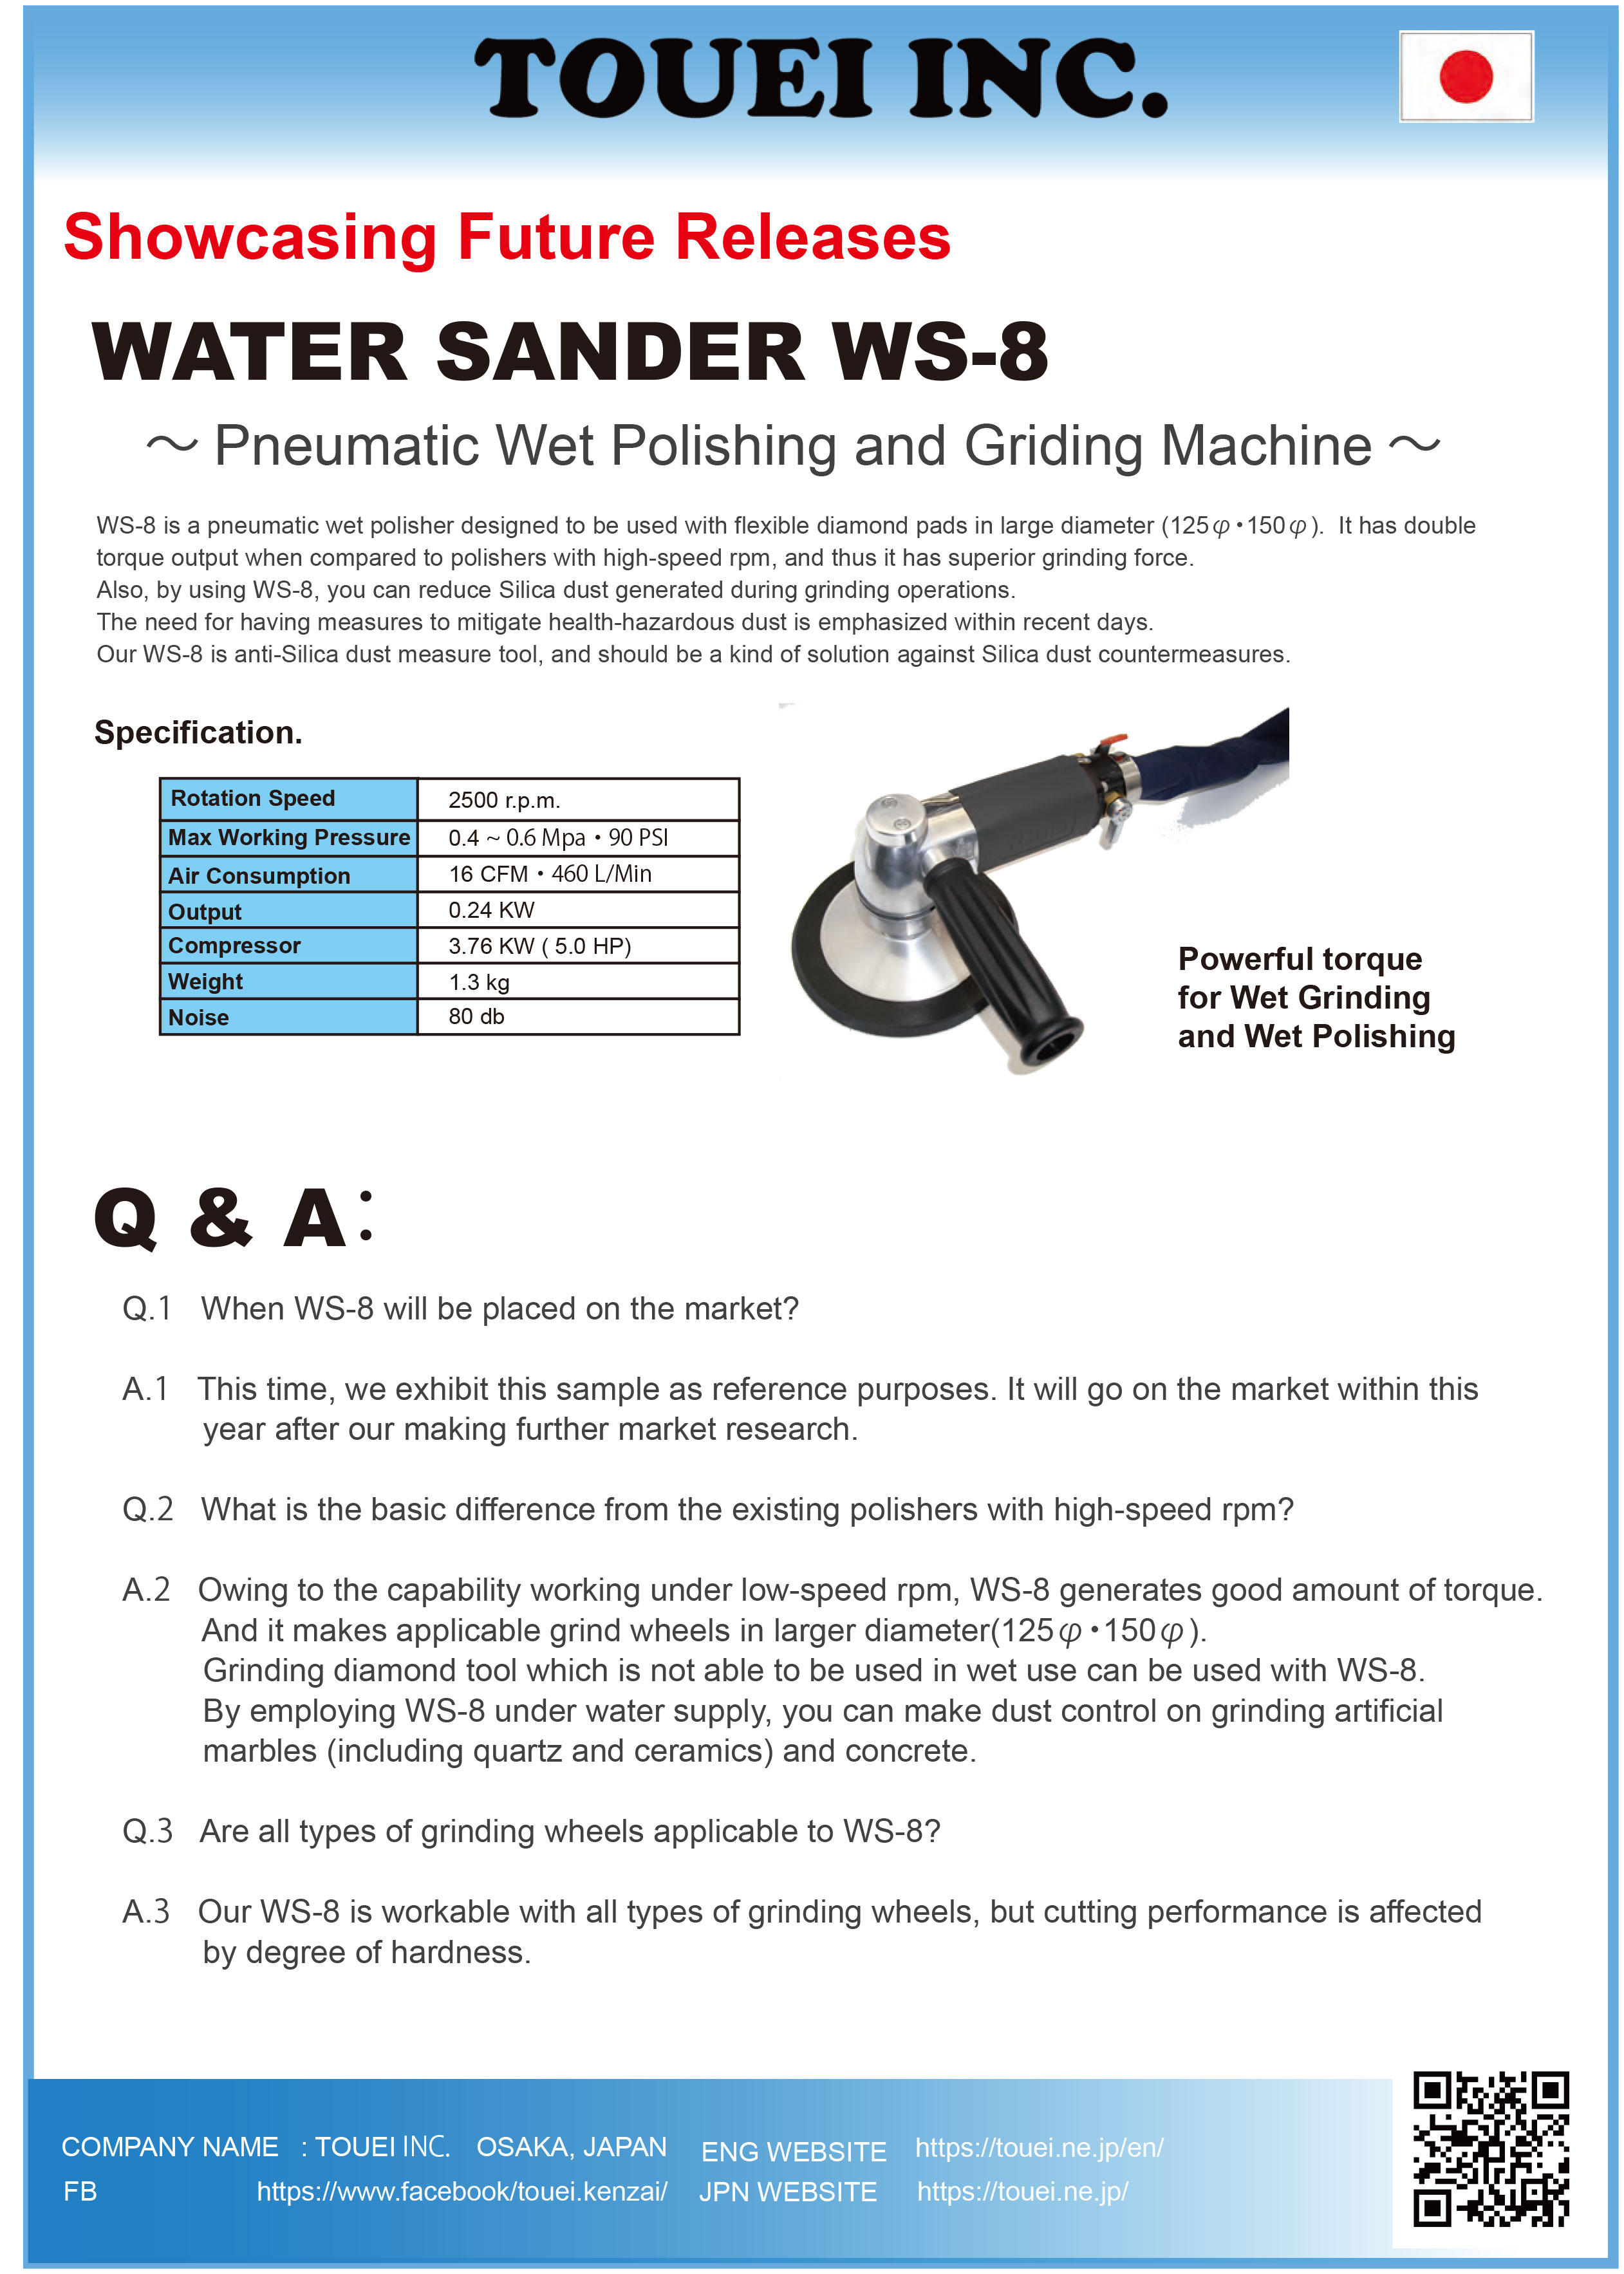 WATER SANDER WS-8